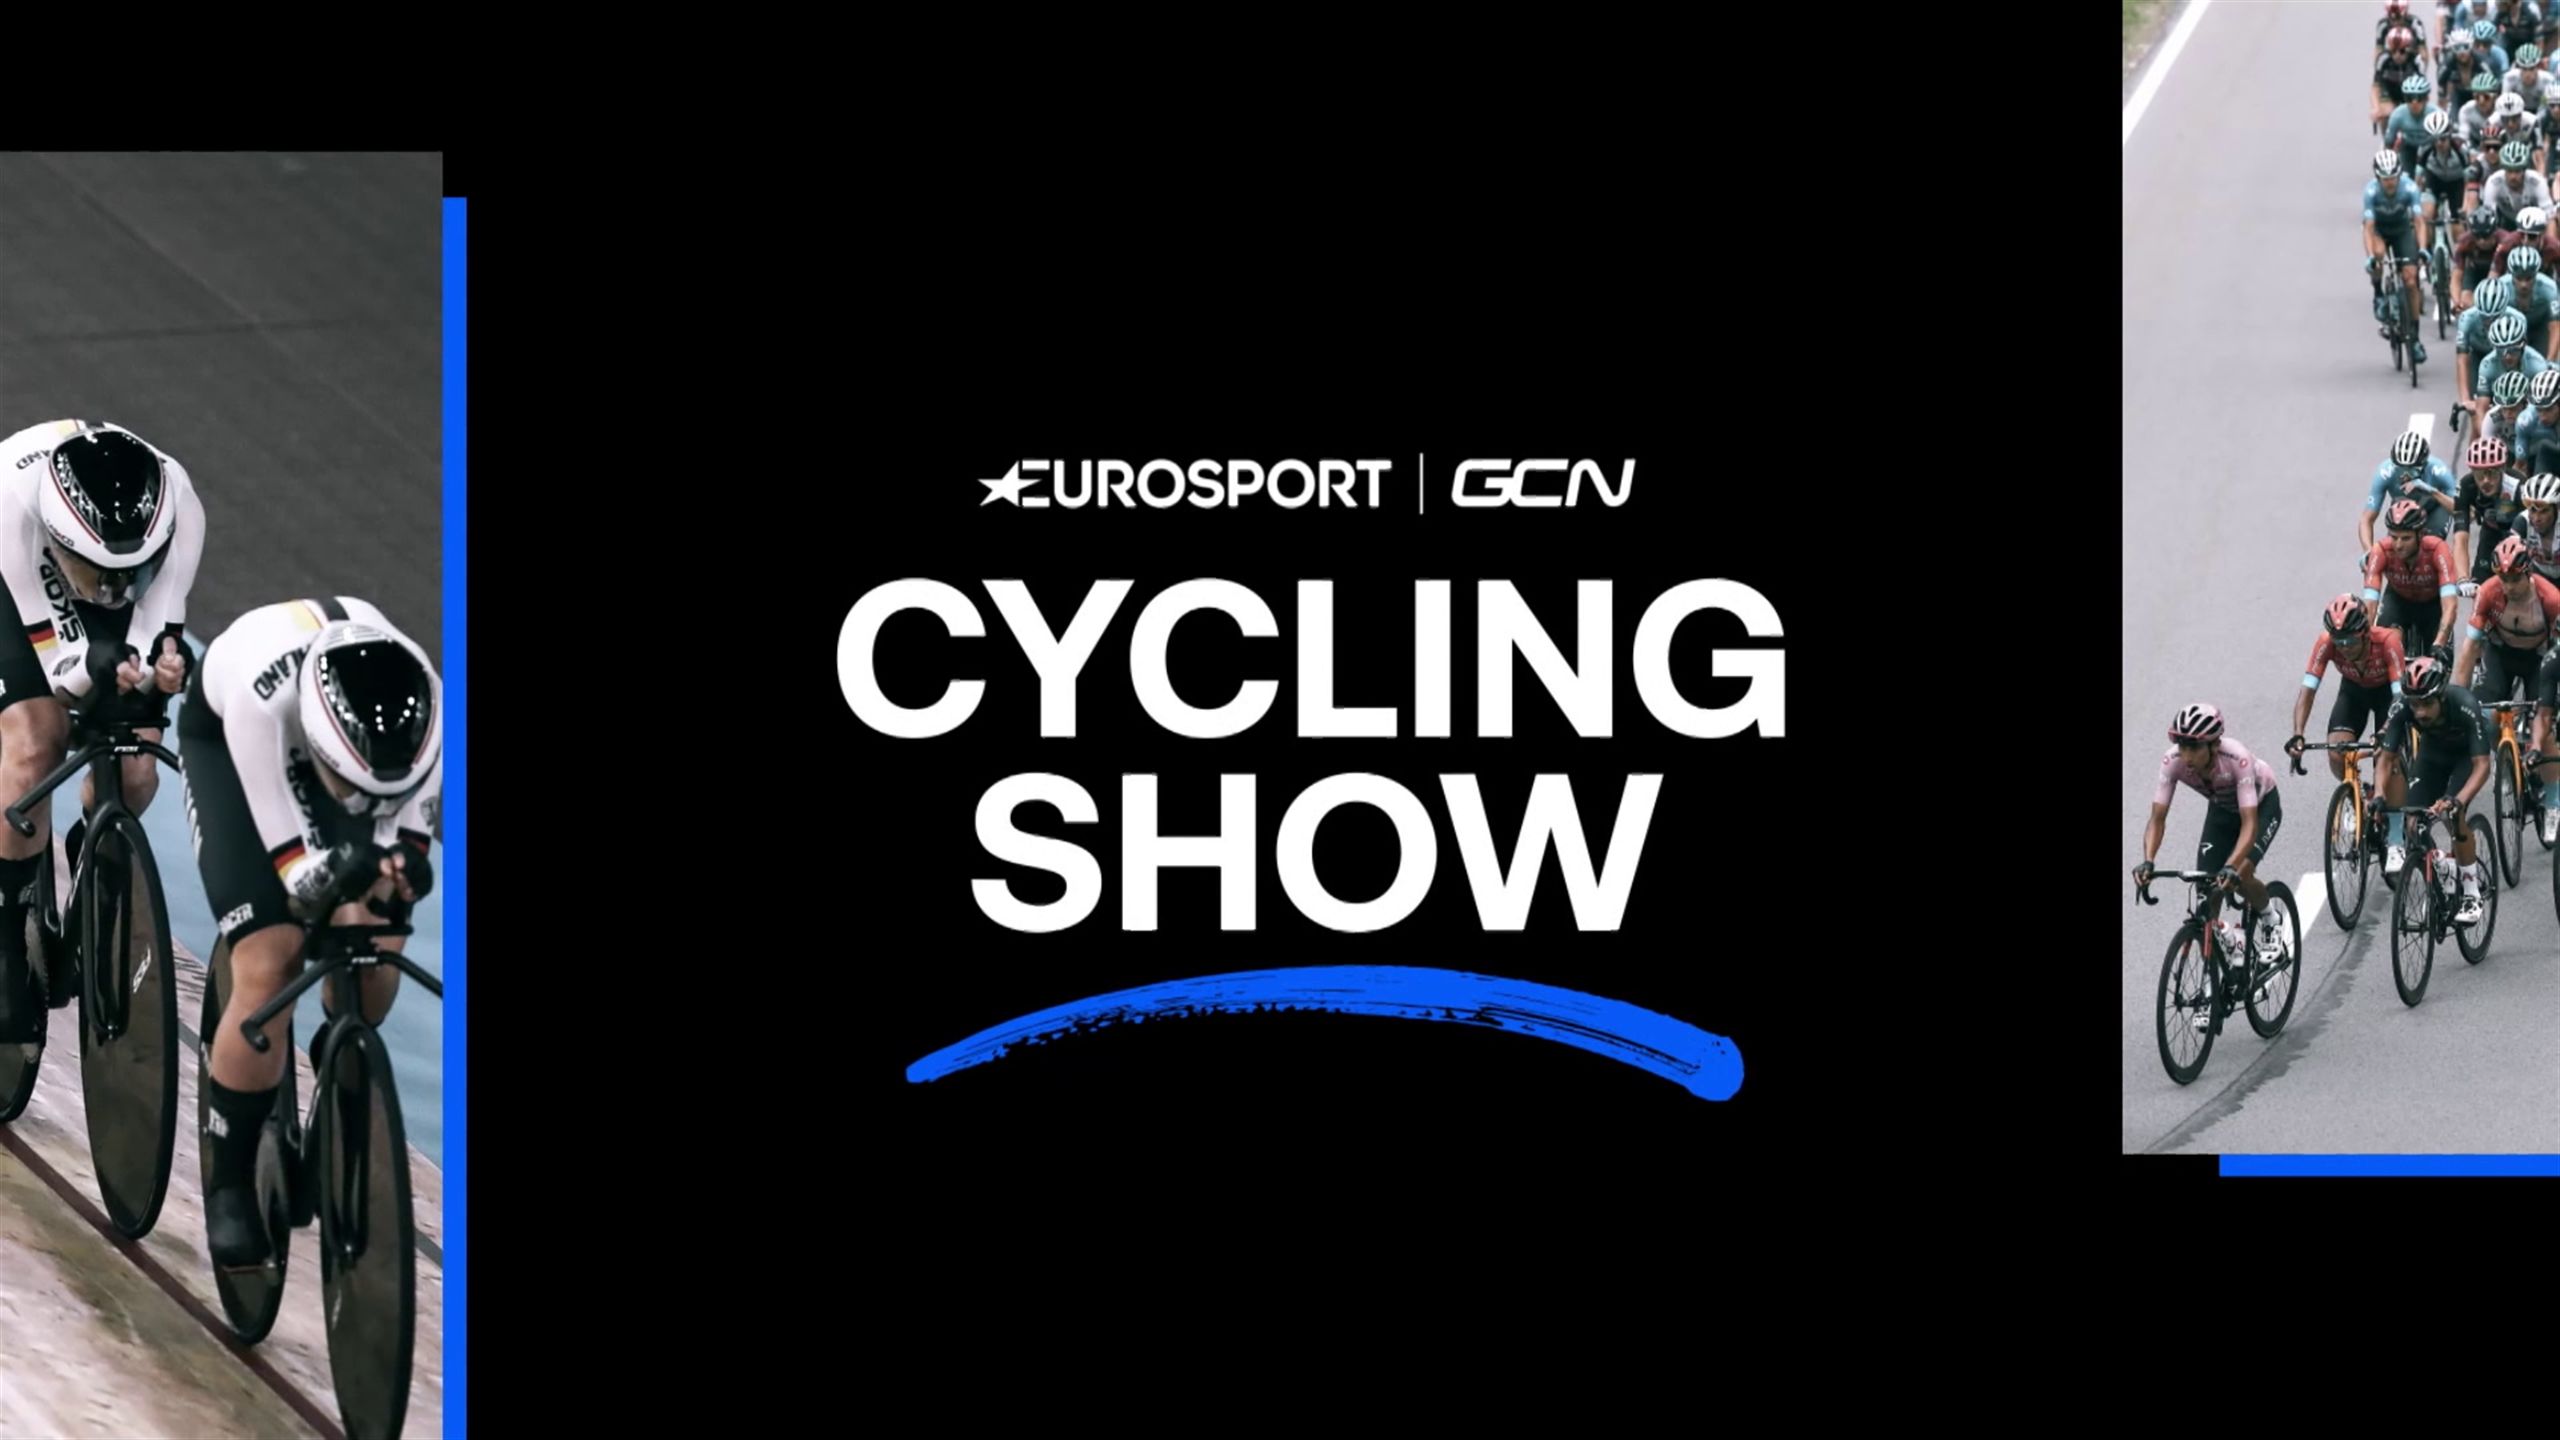 Cycling - Cycling Show Eurosport